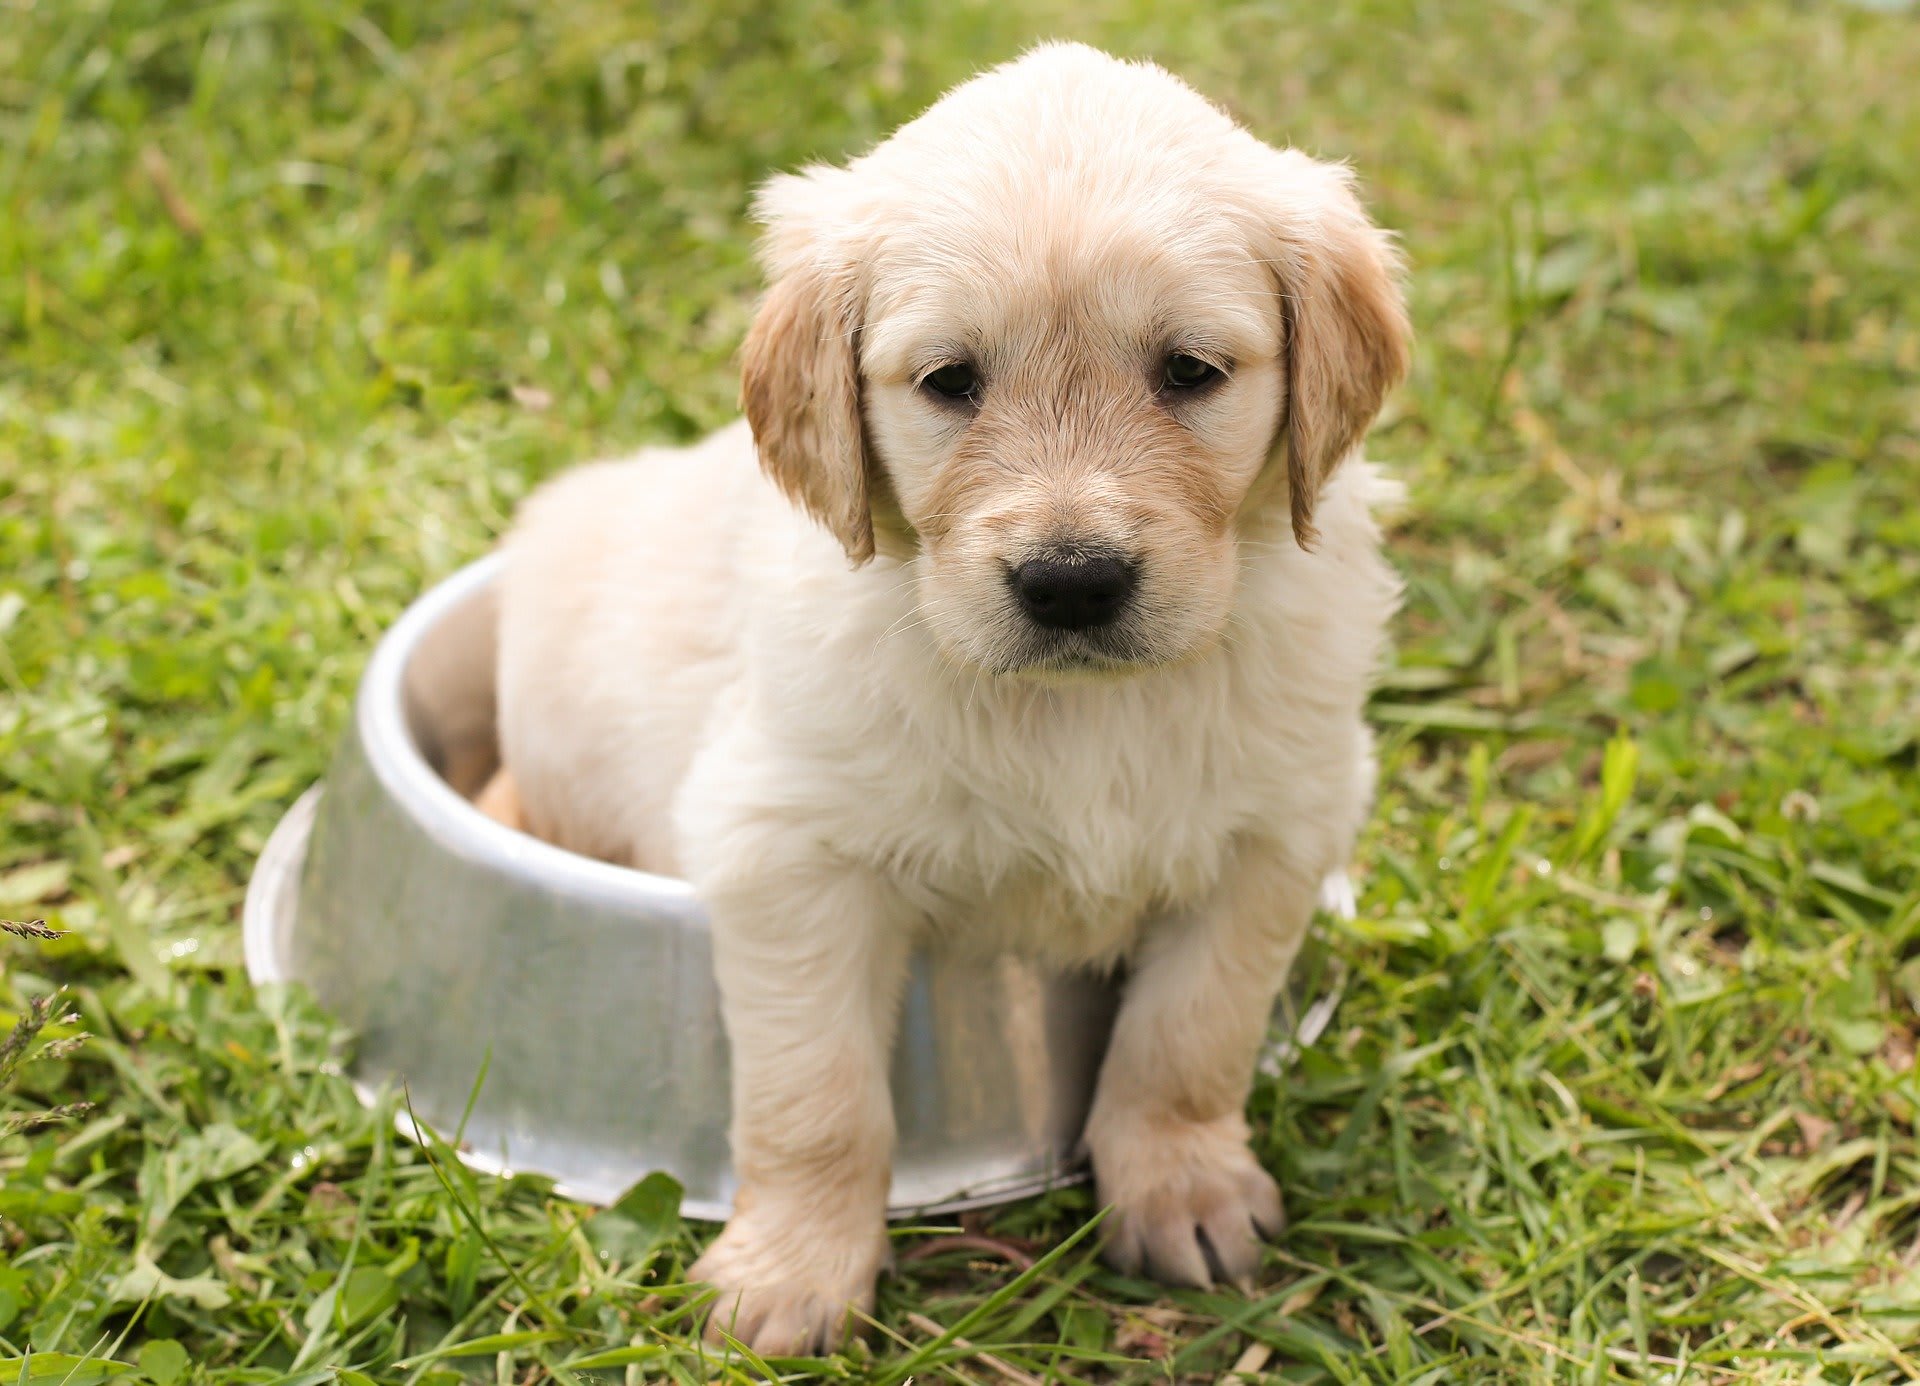 Potrava pro štěně a dospělého psa nebo seniora se liší. Foto: Pixabay.com